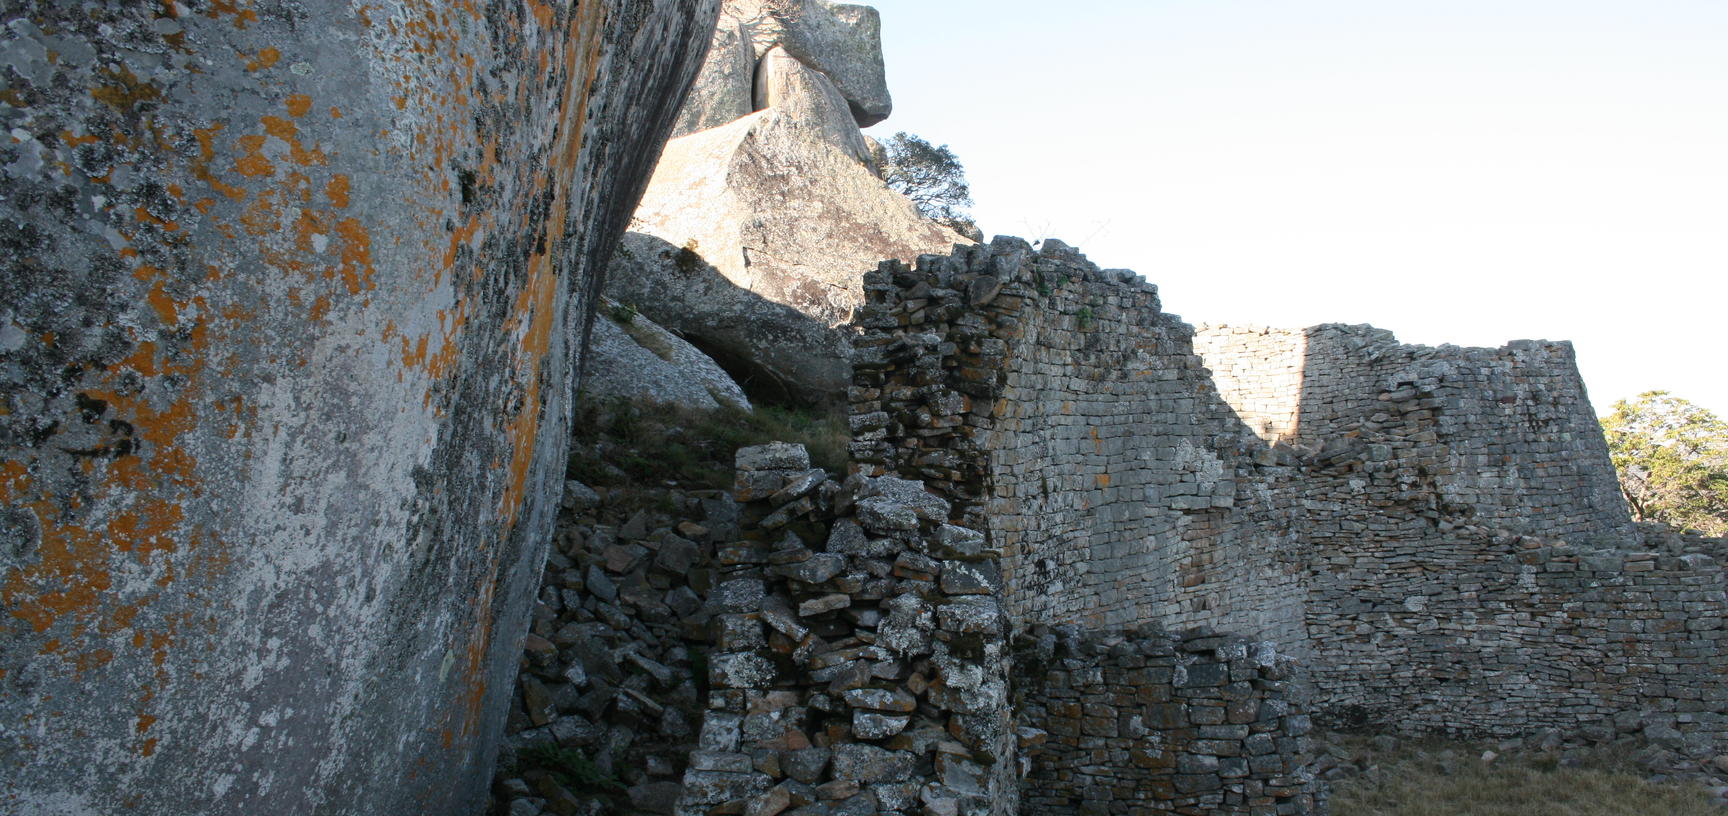 Walls at Great Zimbabwe